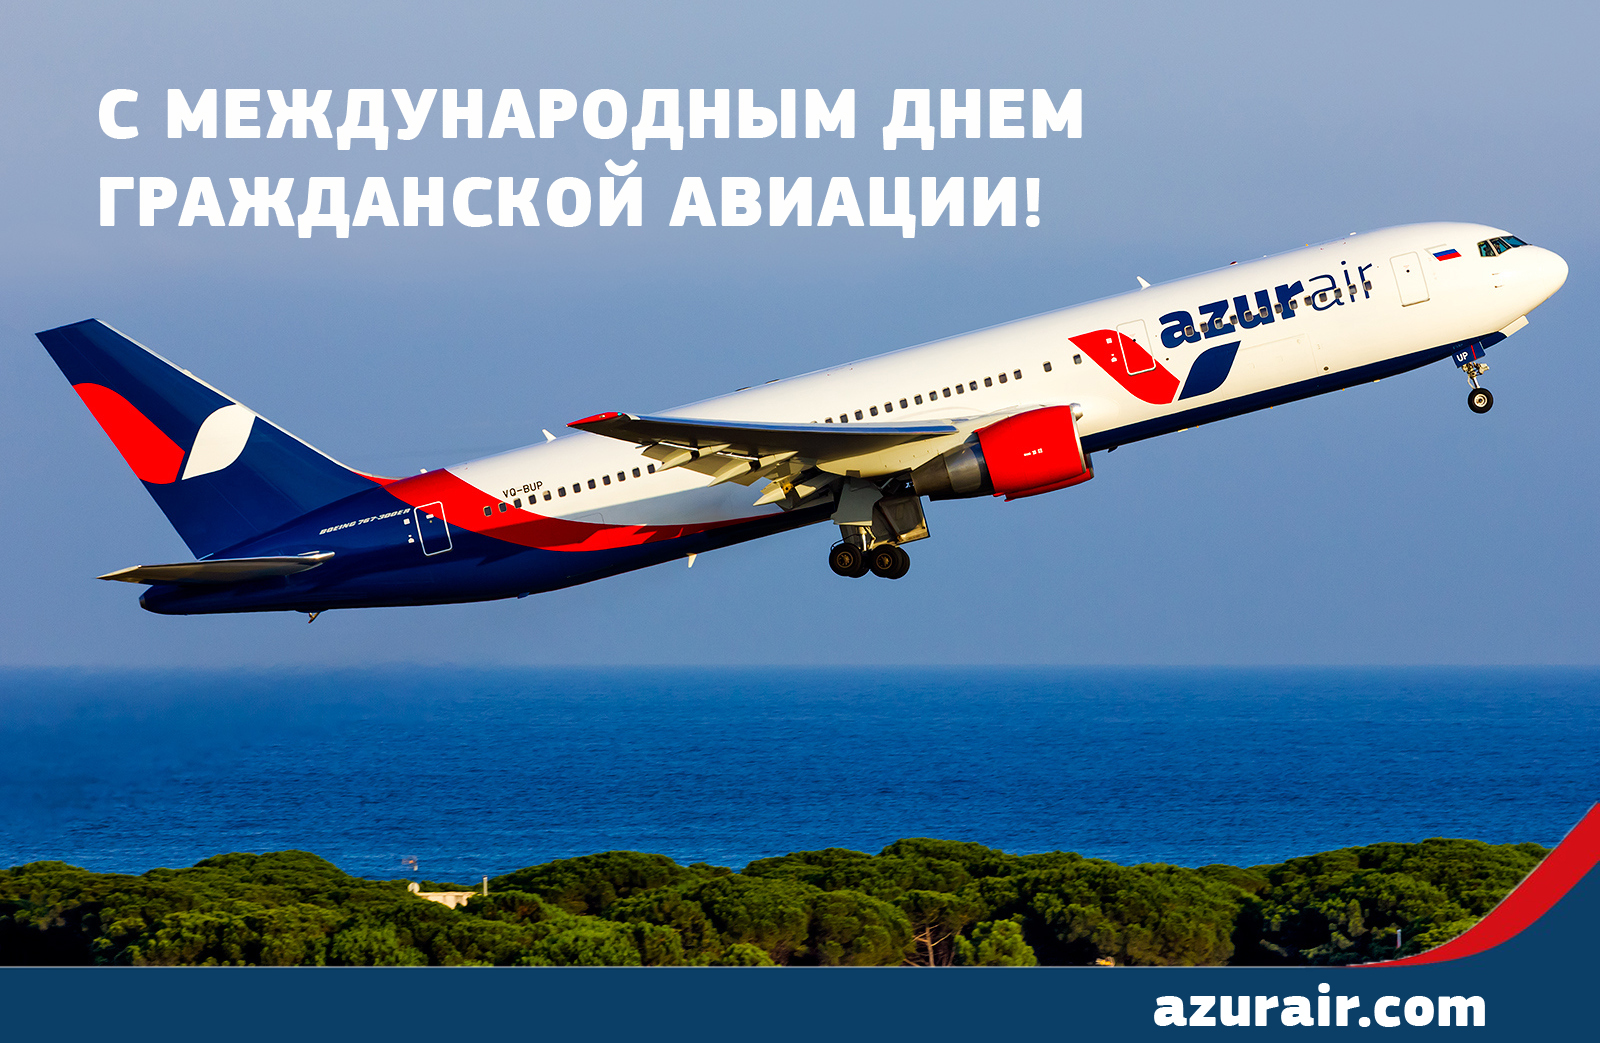 AZUR AIR, Новости, 07-12-2015